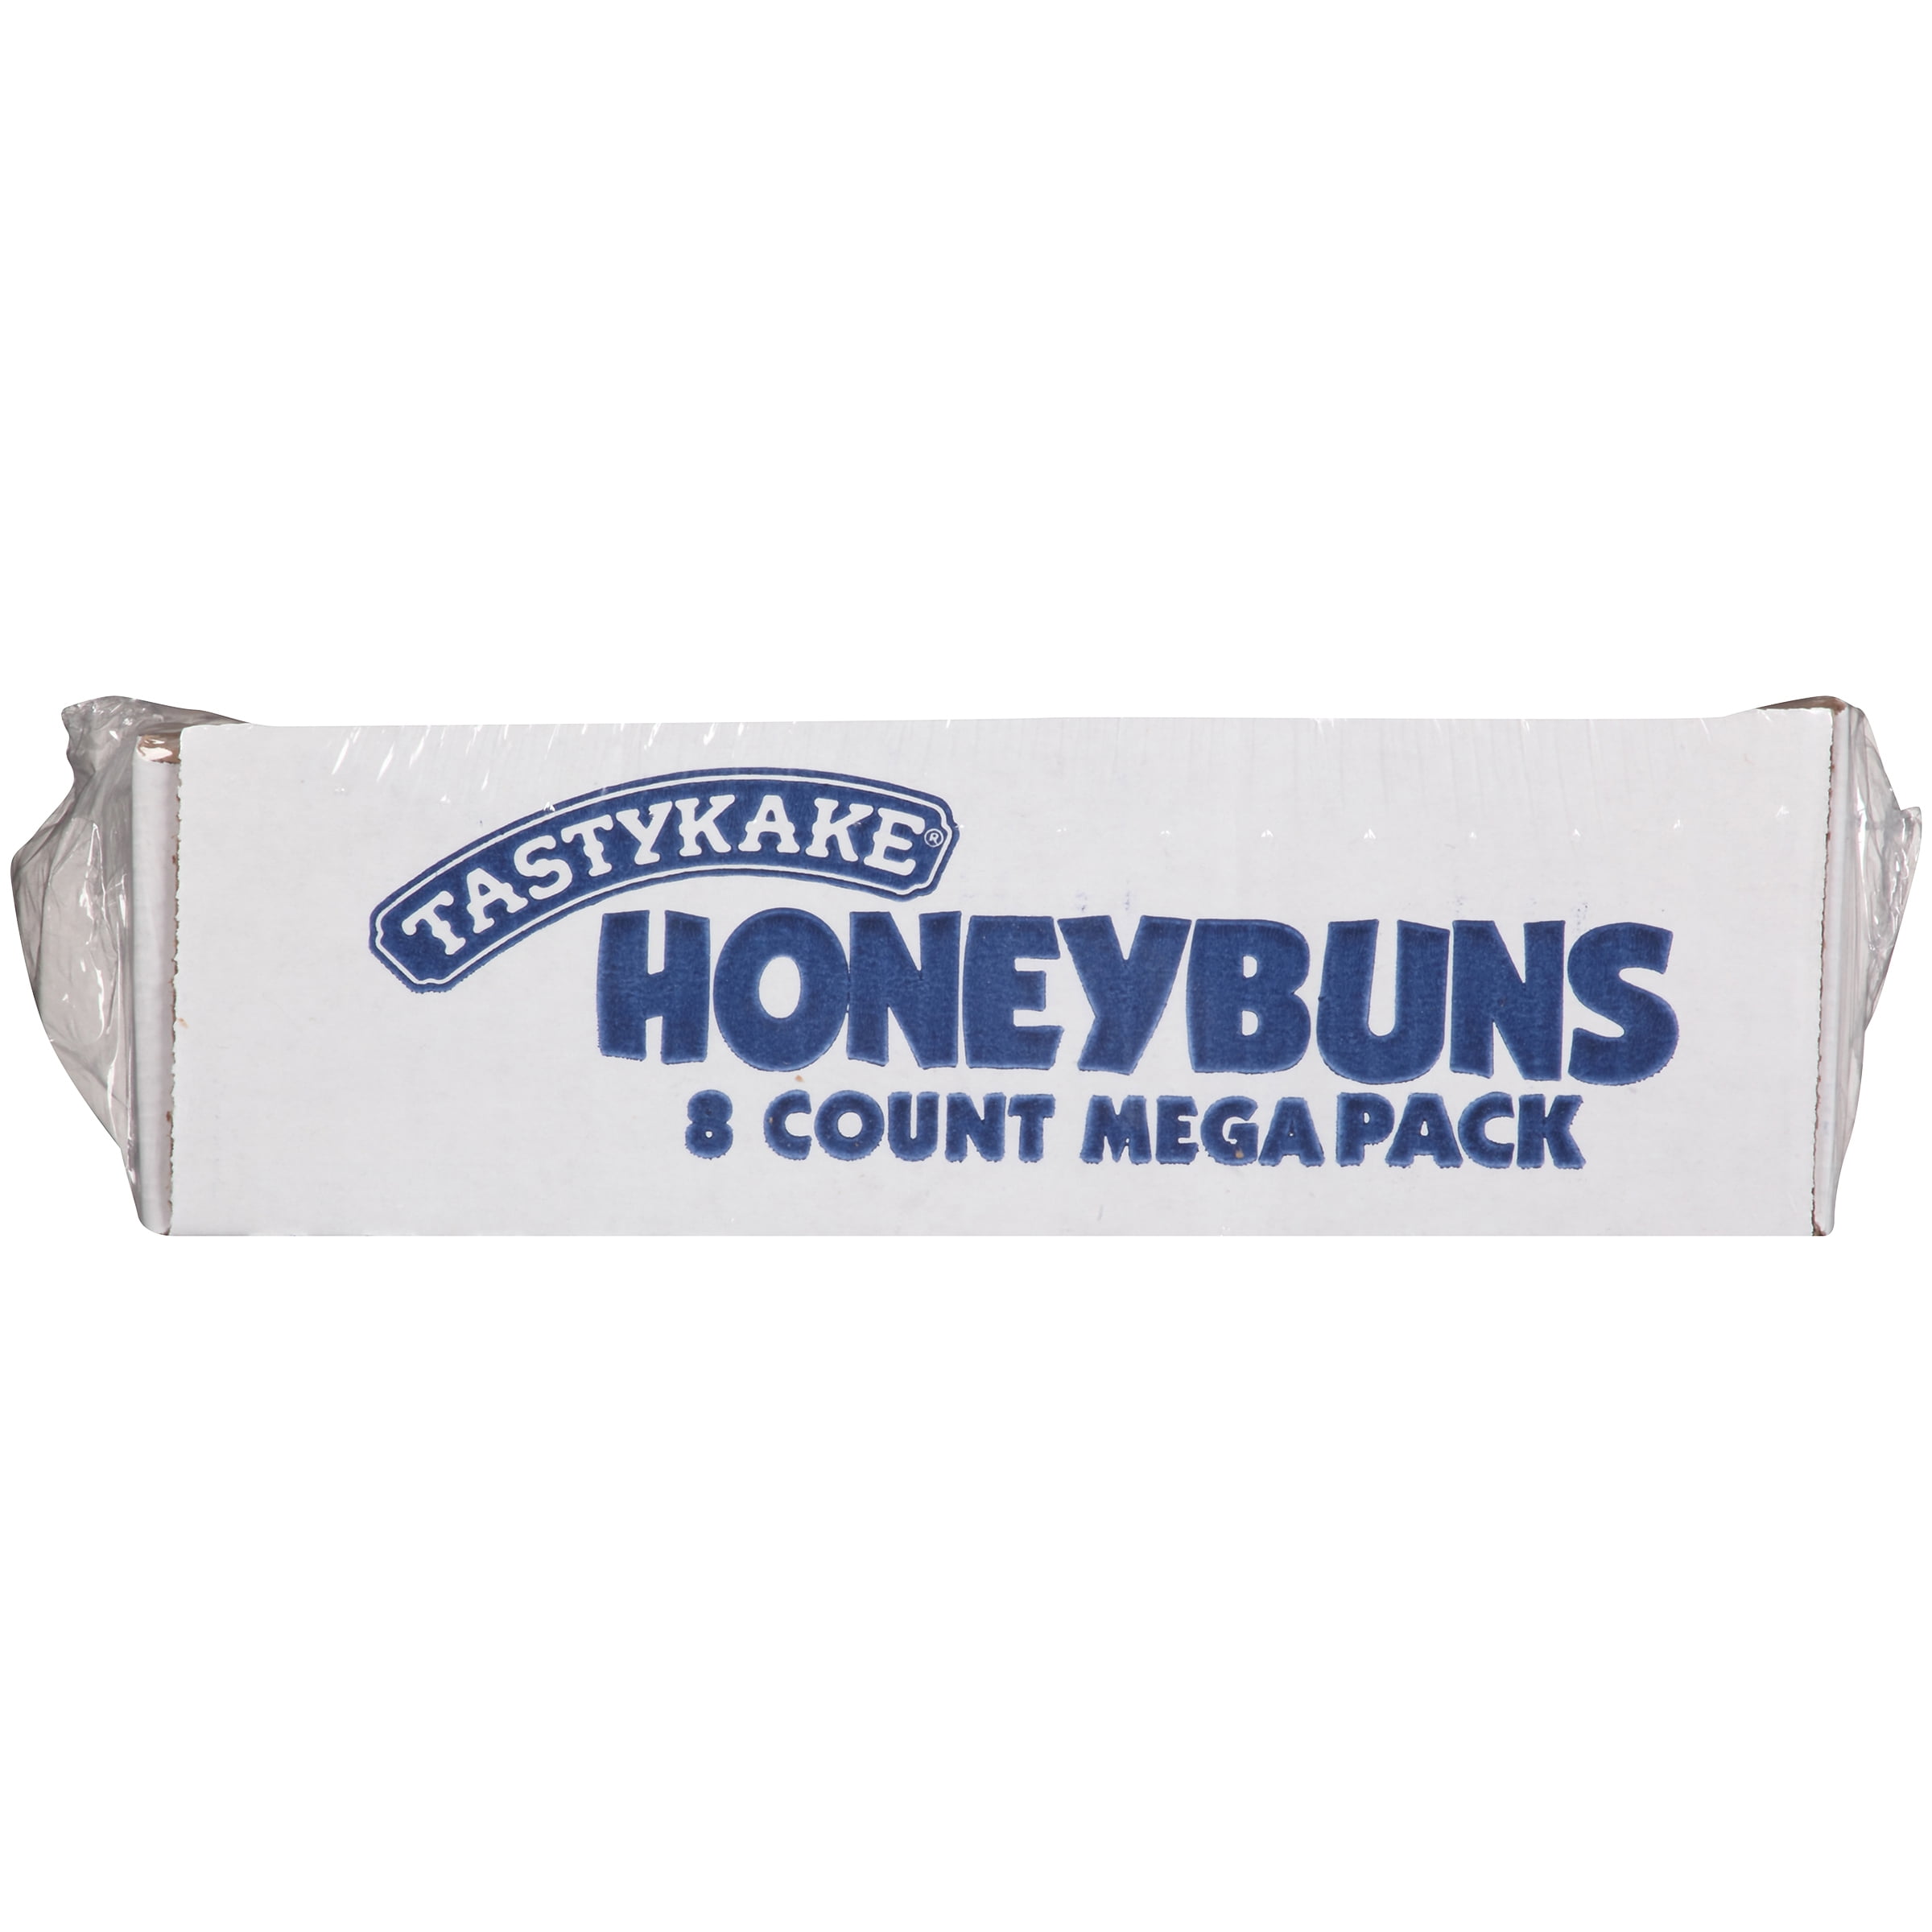 Save on Tastykake Honey Buns Glazed Mega Pack - 8 ct Order Online Delivery